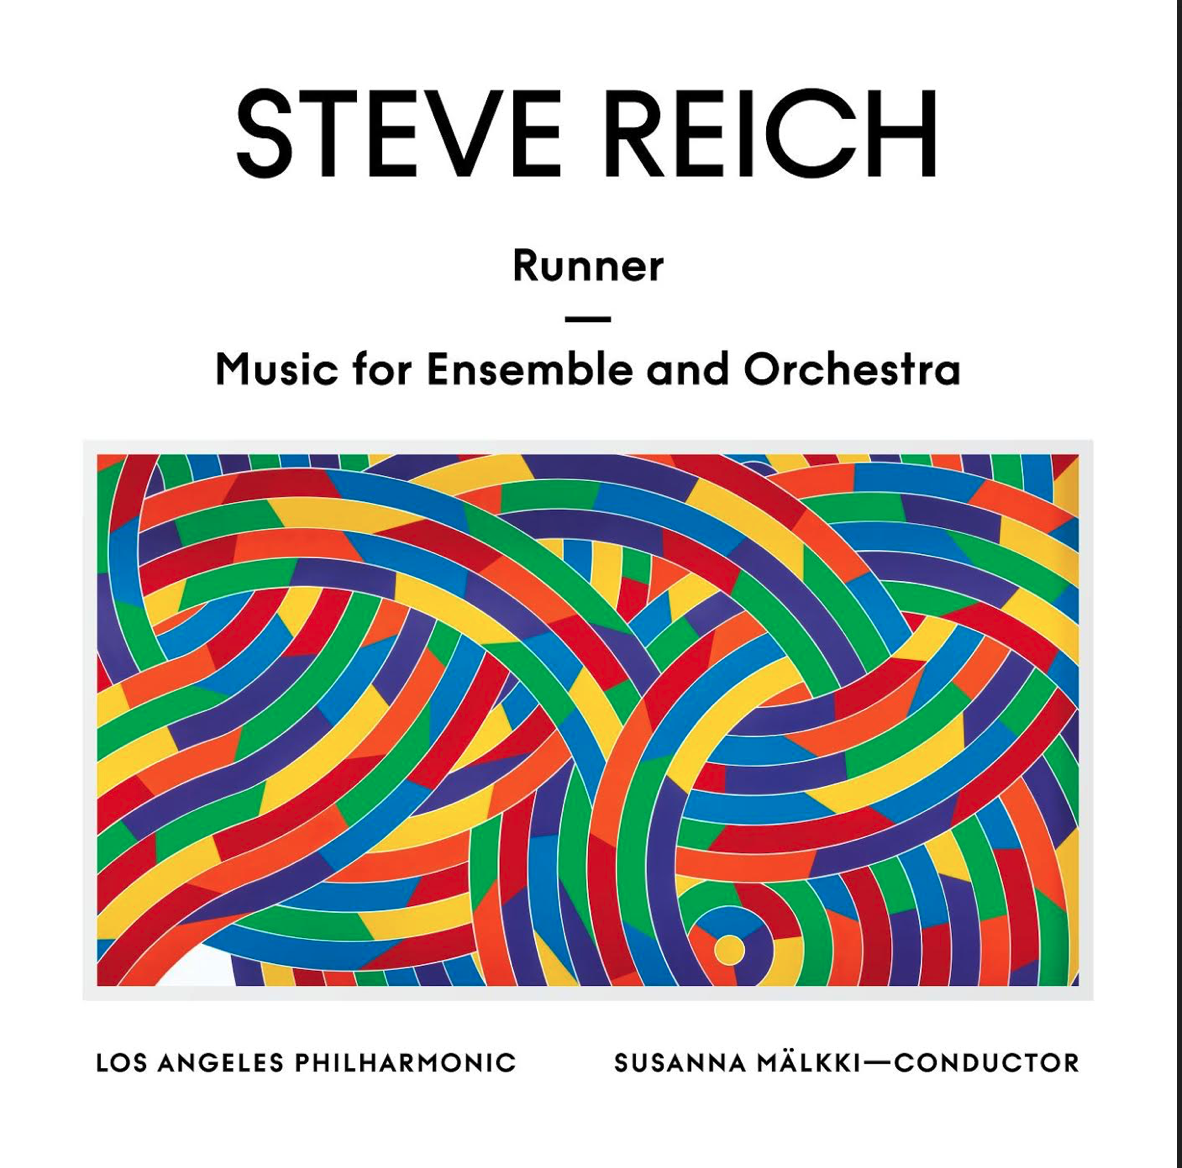 Album artwork for Album artwork for Runner / Music for Ensemble & Orchestra by Steve Reich by Runner / Music for Ensemble & Orchestra - Steve Reich